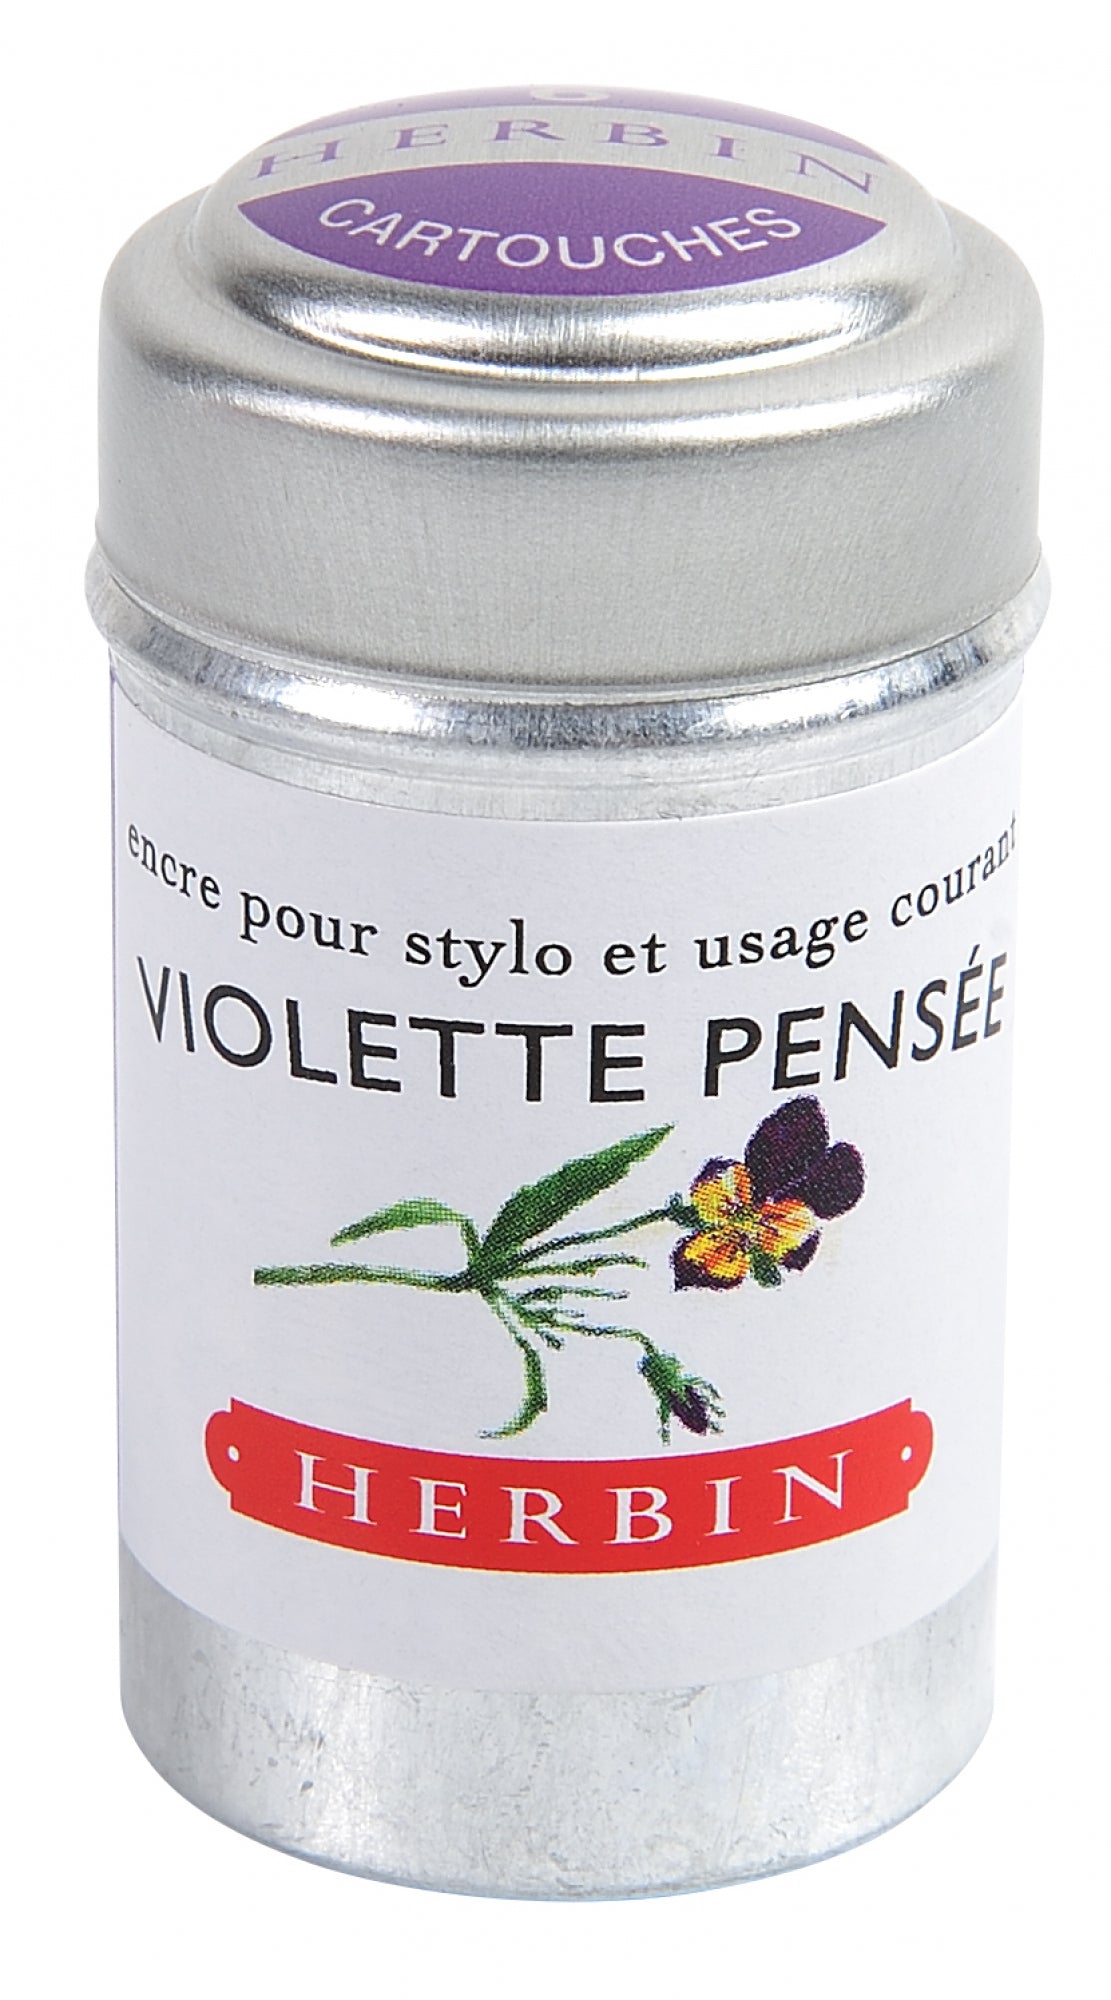 J Herbin Violette Pensee